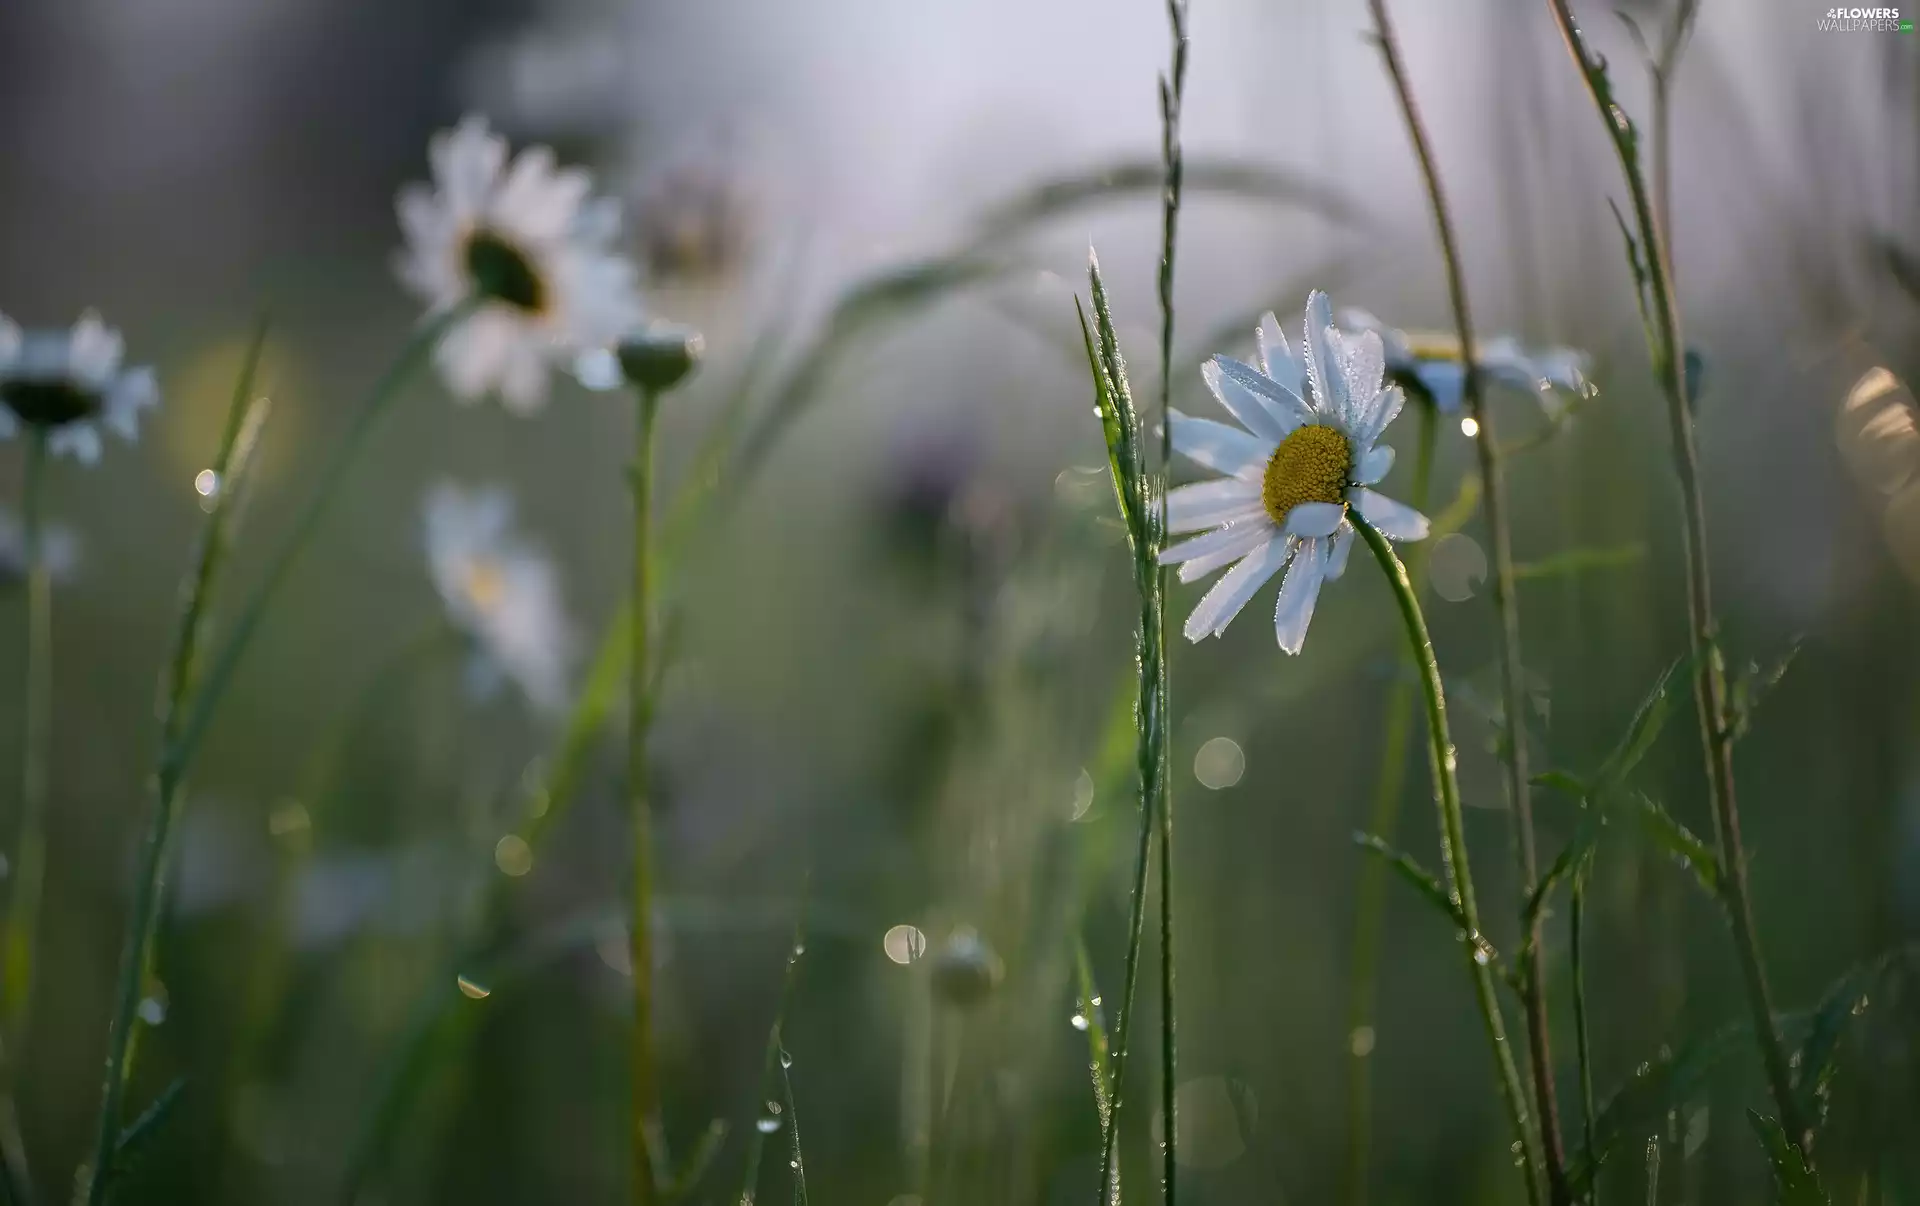 Flowers, dew, grass, daisy